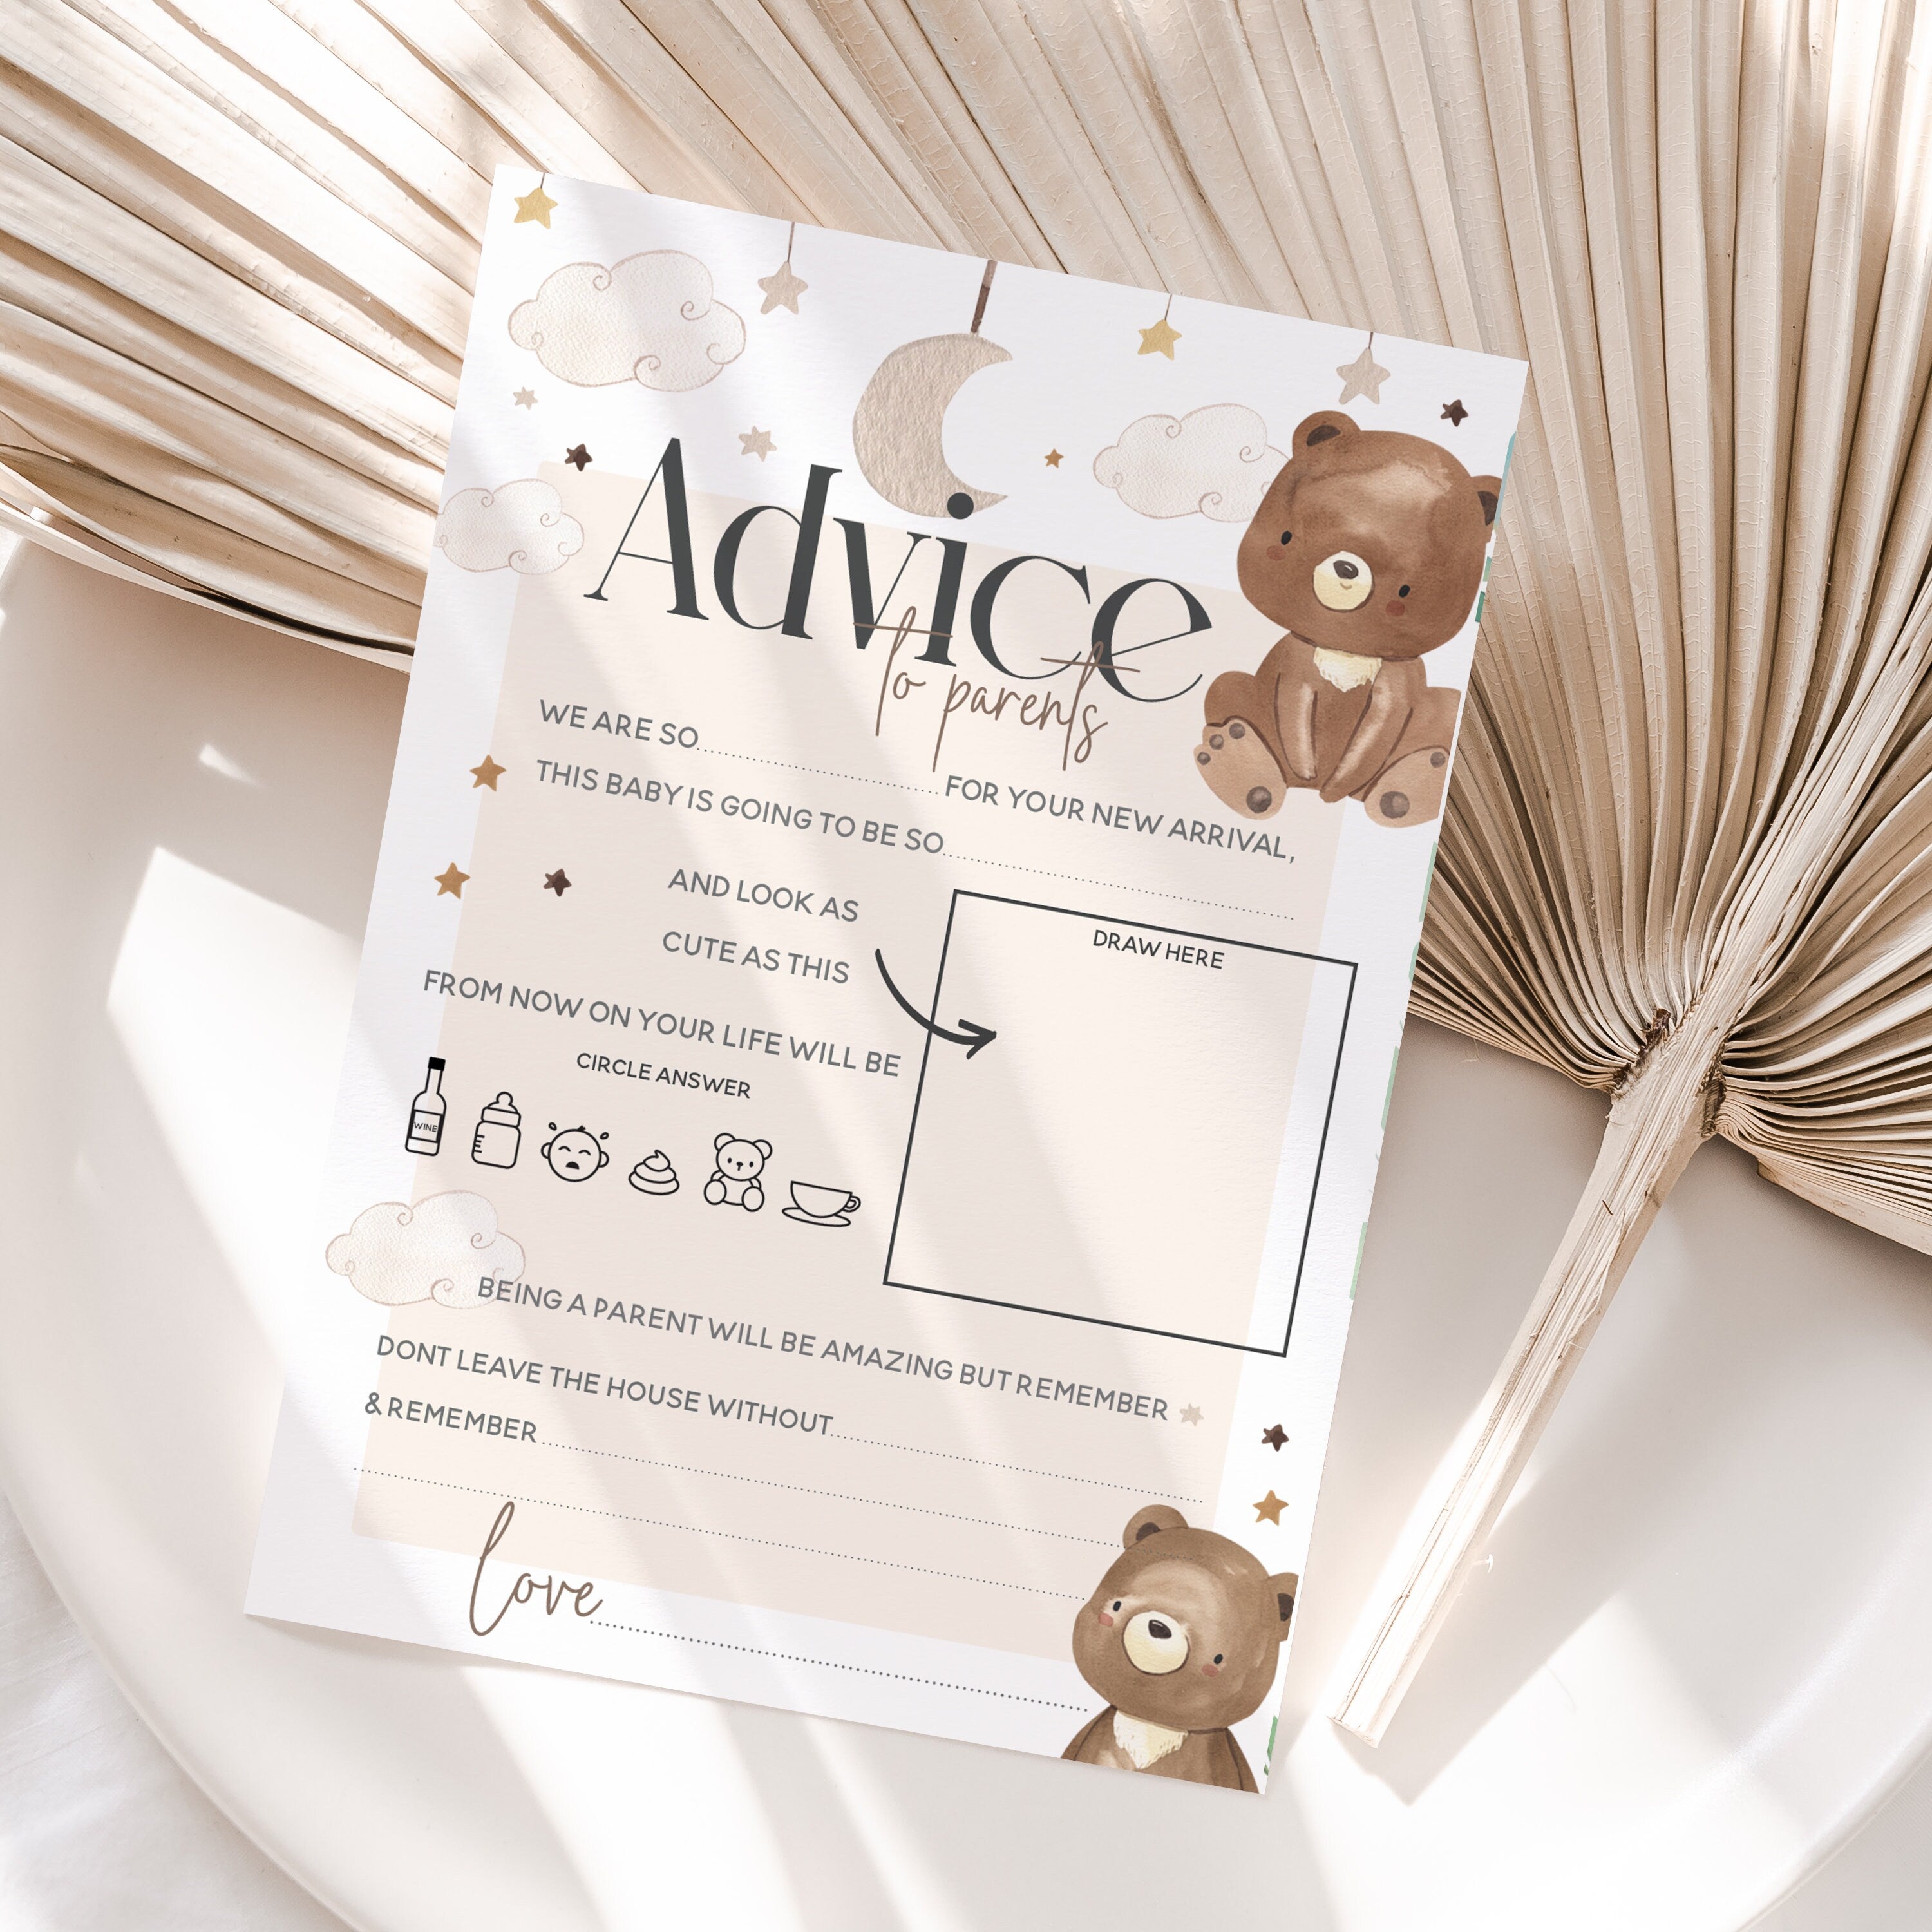 Teddy Bear Theme Advice To Parents Cards